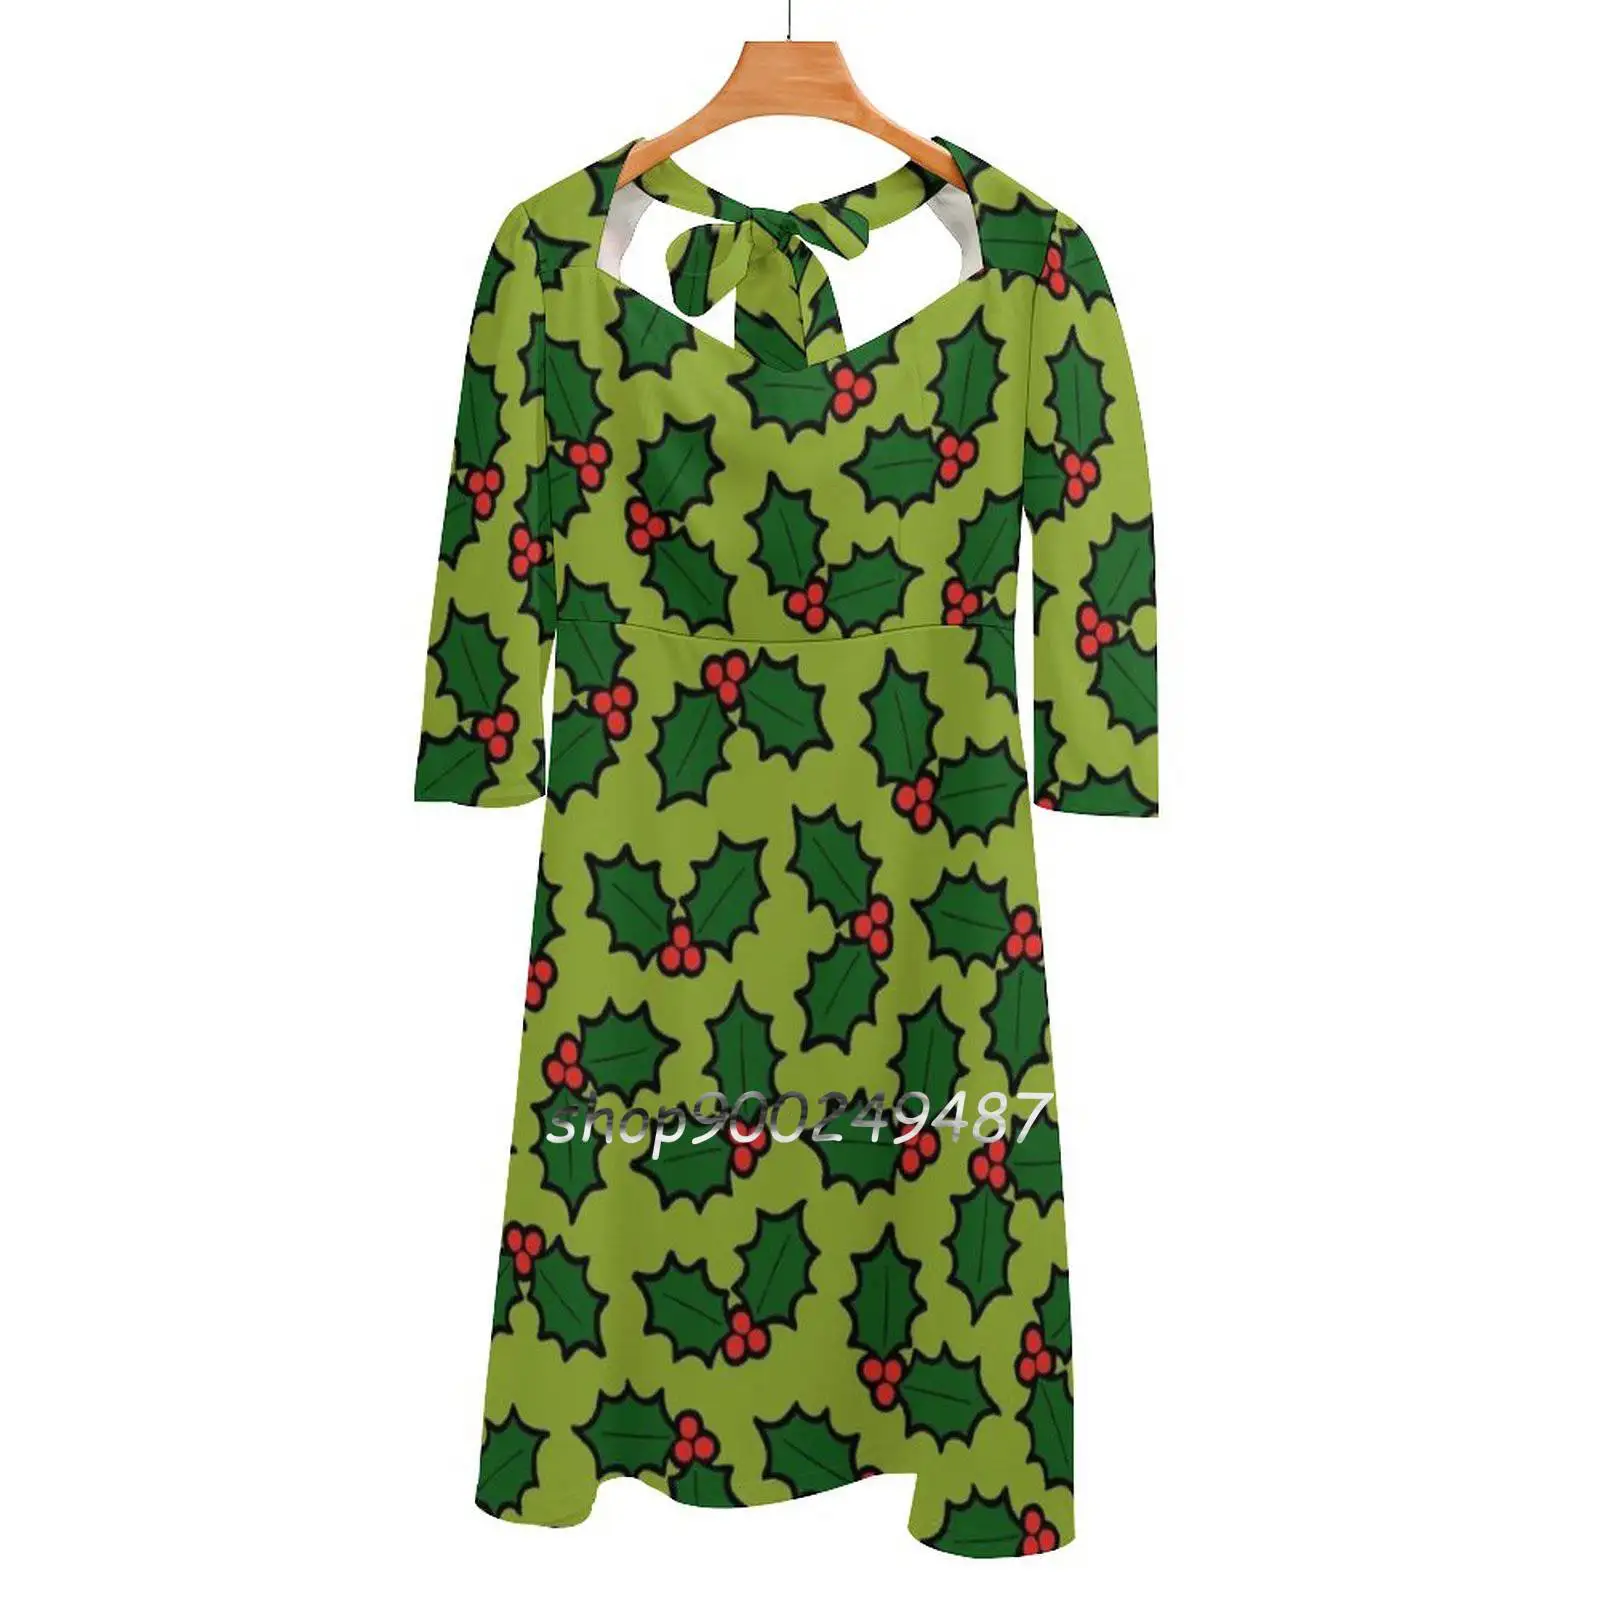 

Женское платье с квадратным вырезом, светло-зеленое платье с принтом листьев и ягод Падуба, Элегантное летнее платье с лямкой на шее